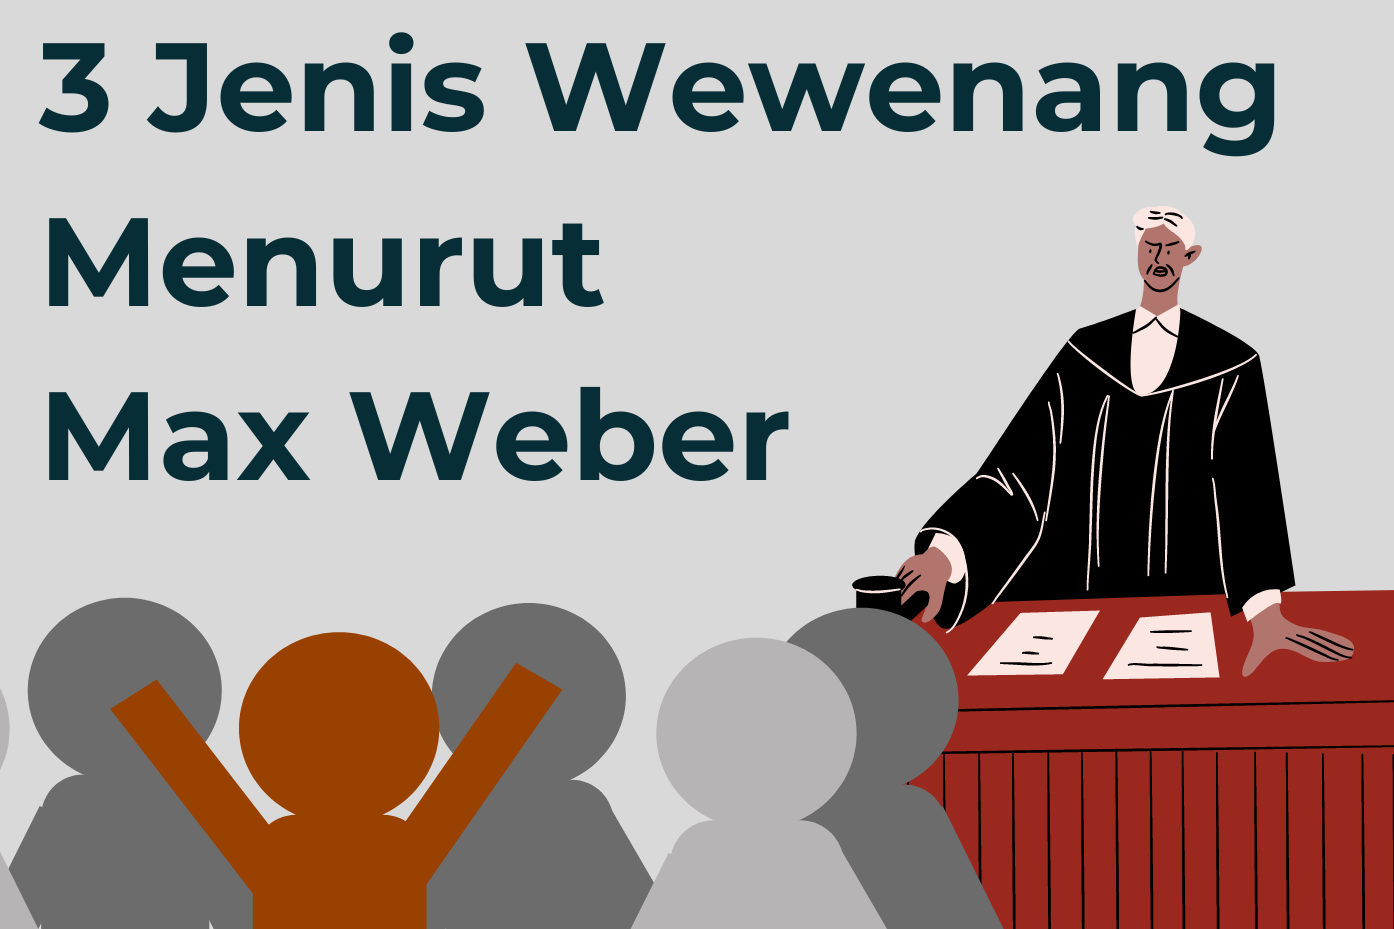 3 Jenis Wewenang Menurut Max Weber